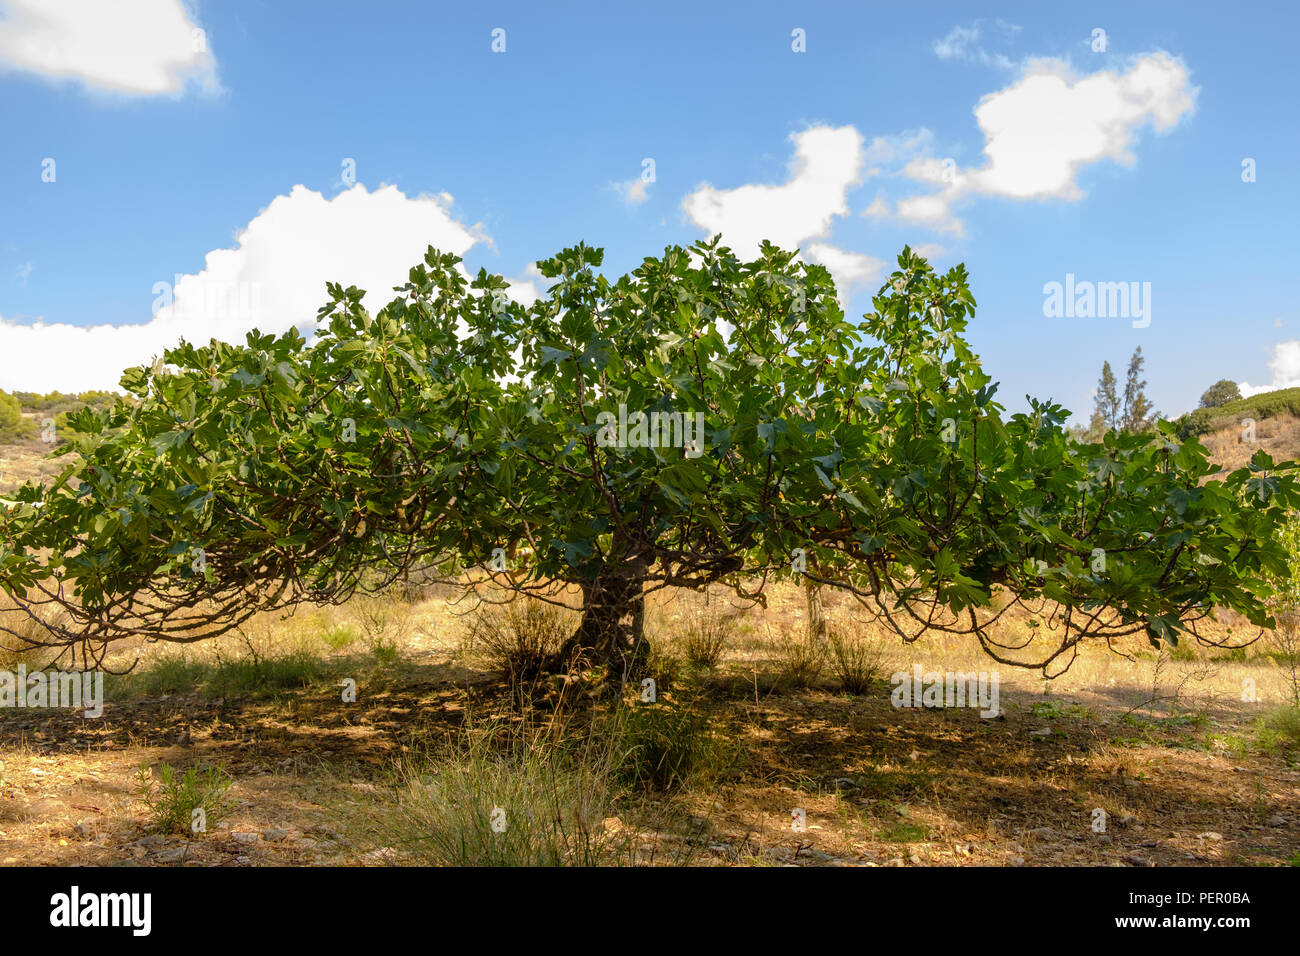 Figuier commun Ficus carica ( ) de la famille de mûrier, florissante à l'été, la chaleur grecque Juillet Saronida, Grèce, Europe. Banque D'Images